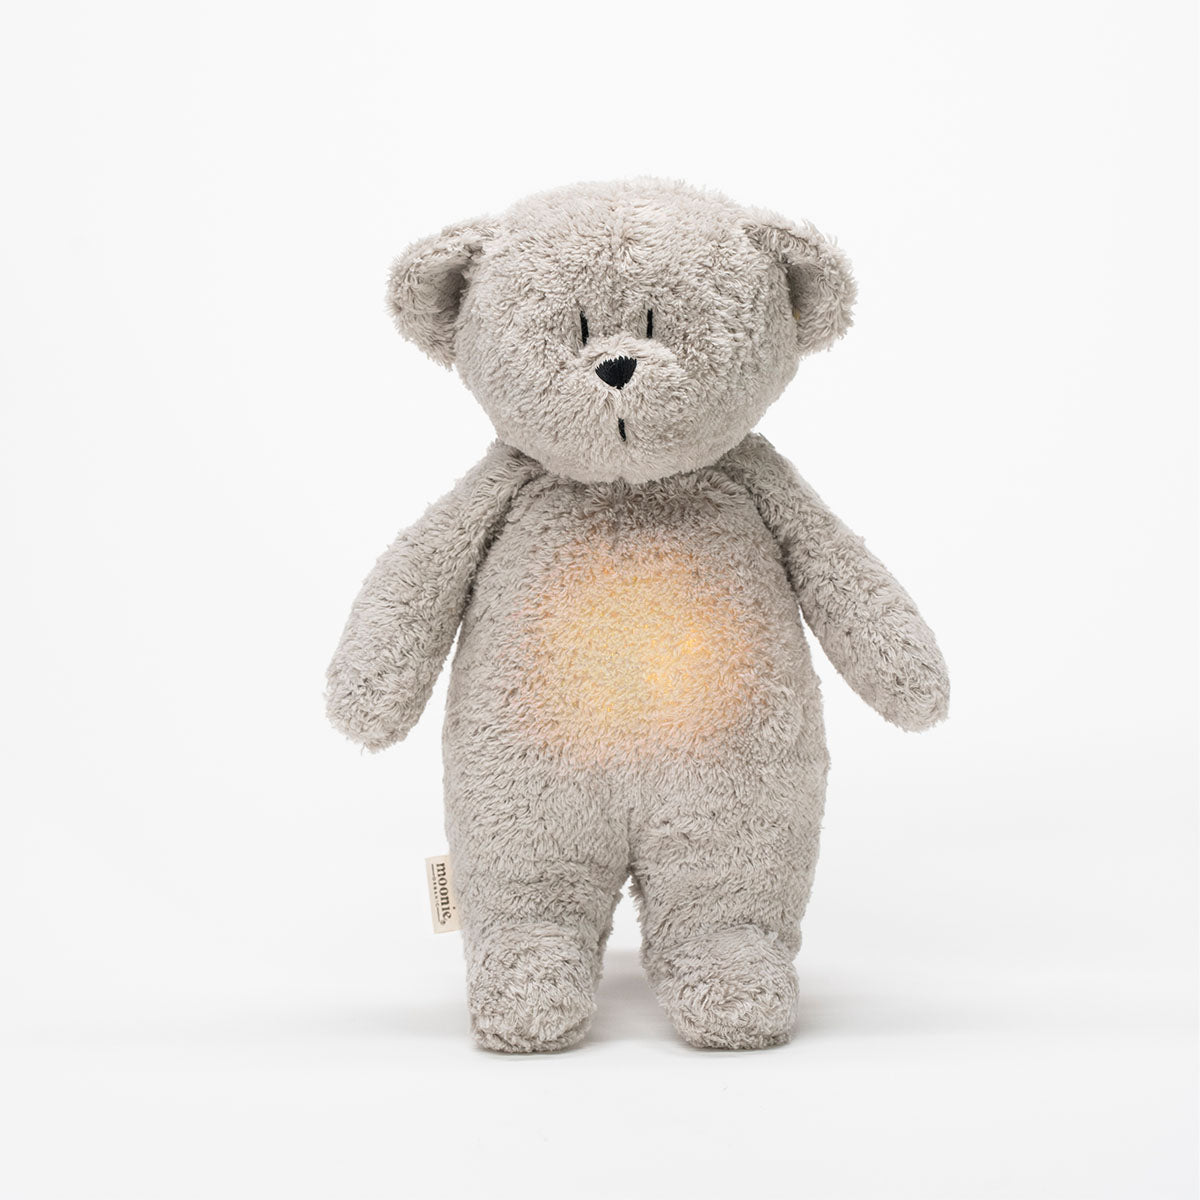 Deze fantastische humming bear lamp gray natur van het merk Moonie is ideaal voor kleintjes die lastig in slaap kunnen vallen. Deze lieve berenknuffel is namelijk voorzien van een lampje en produceert fijne en natuurlijk geluiden waarmee je kindje heerlijk in slaap kan vallen. VanZus